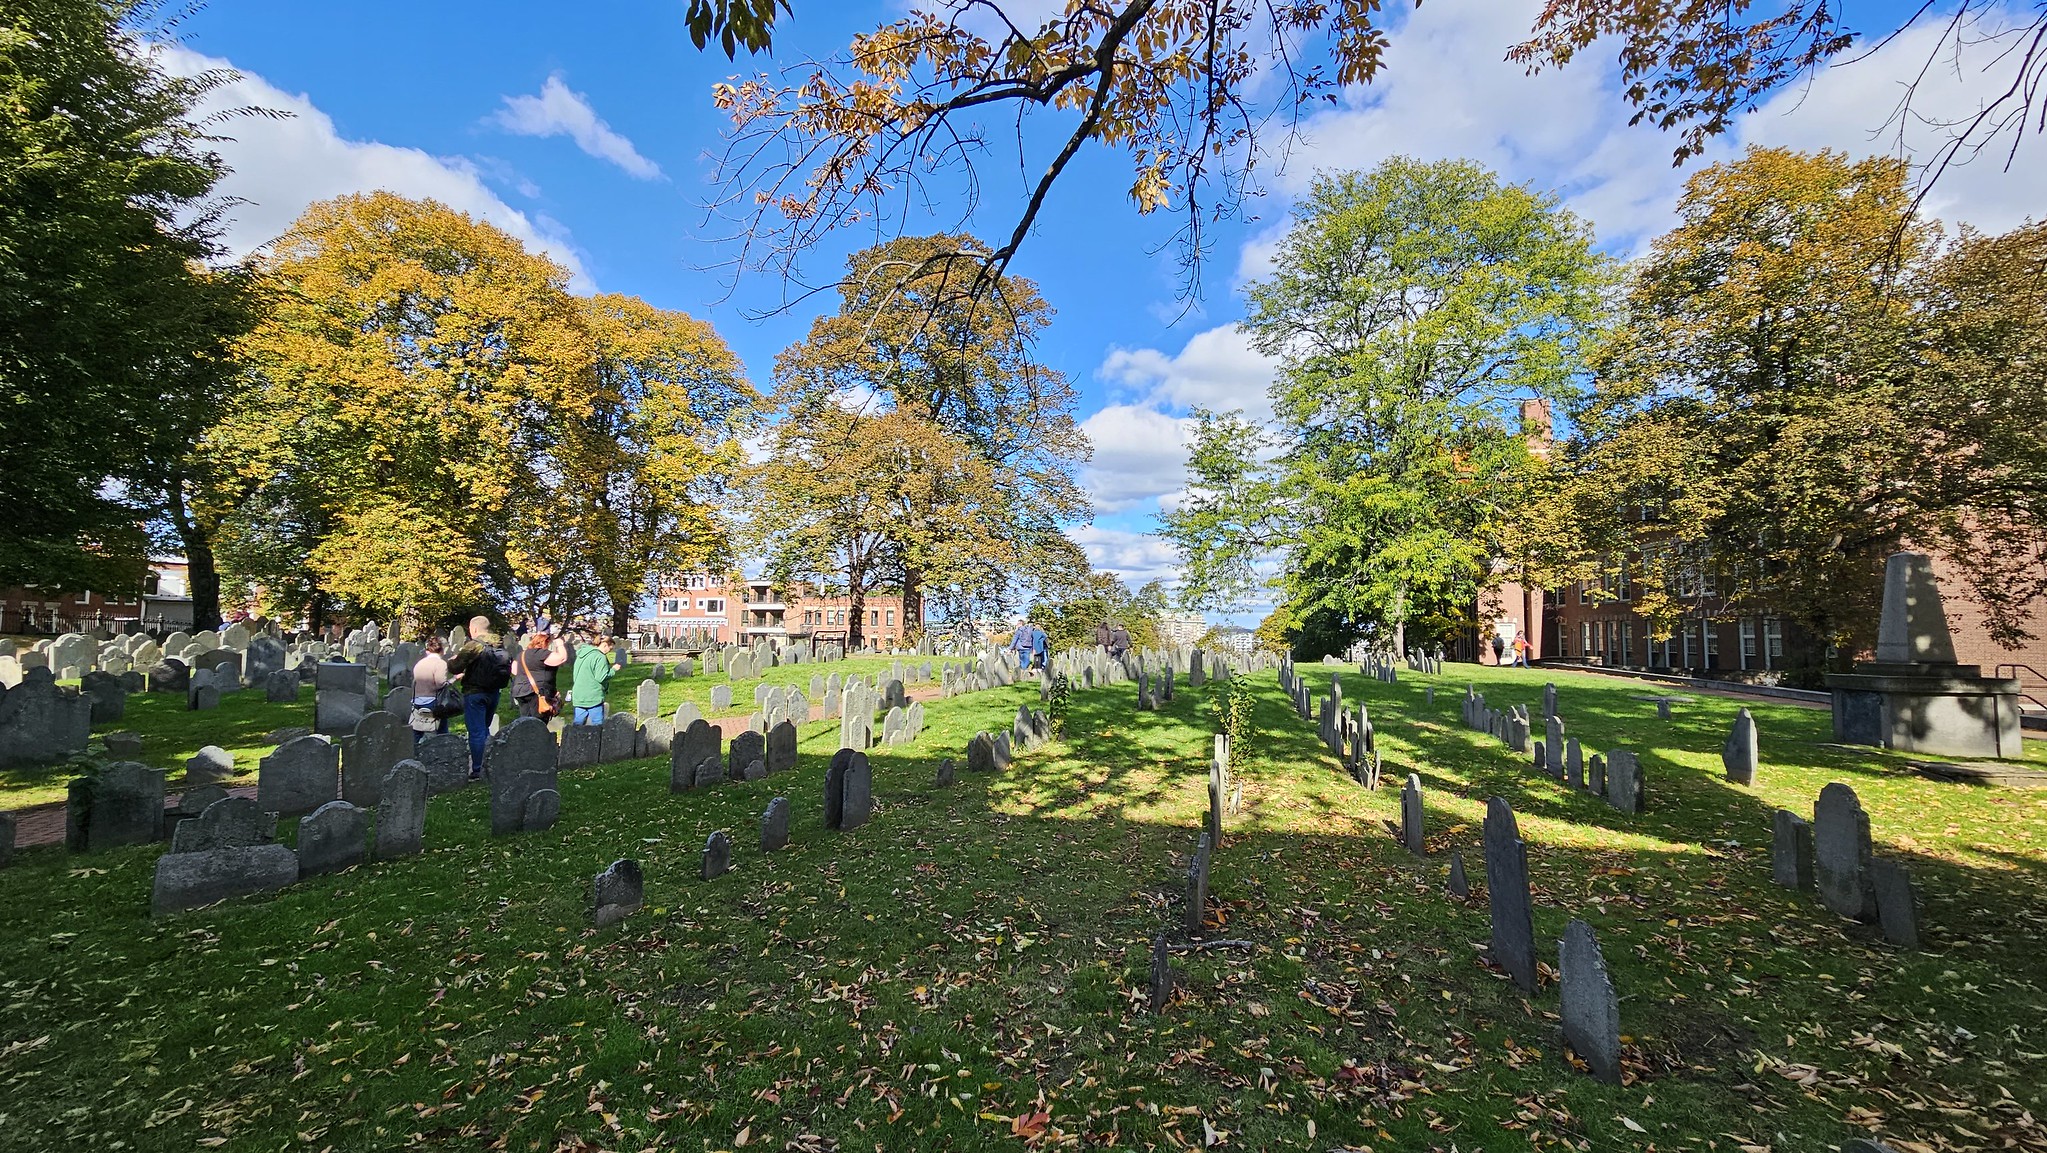 Copp's Hill Burying Ground in Boston